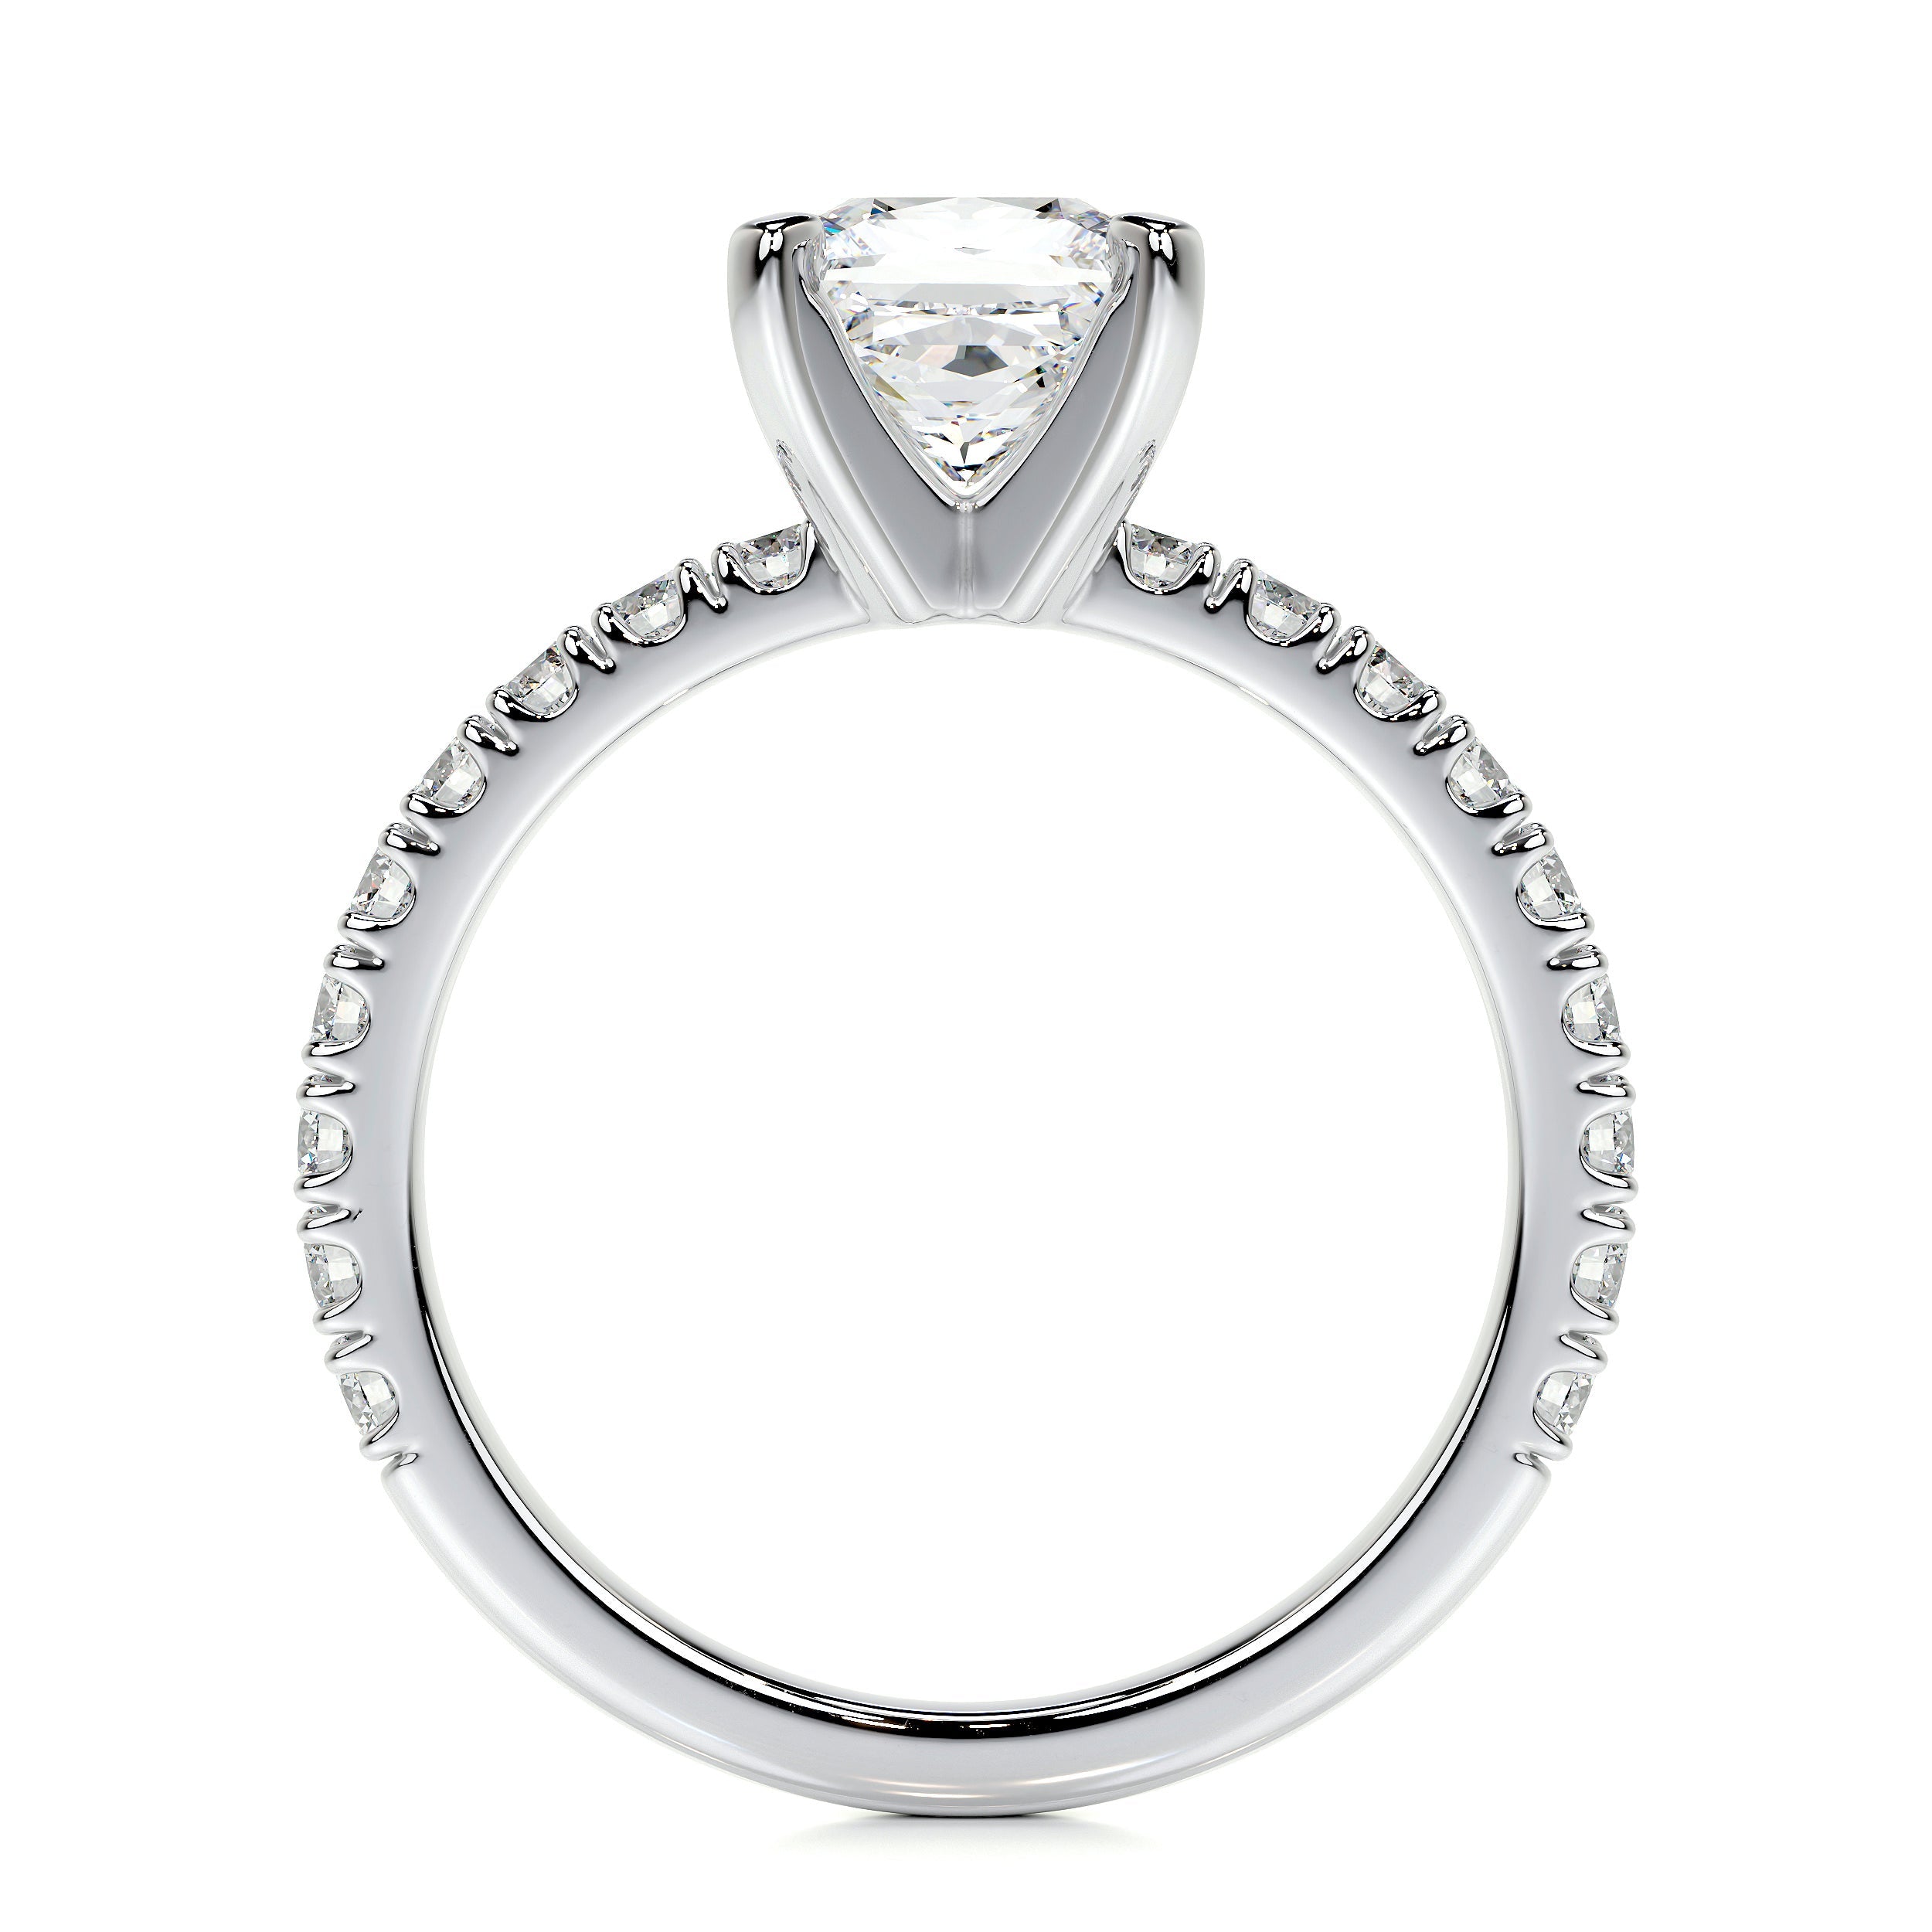 Blair Lab Grown Diamond Ring   (1.5 Carat) -14K White Gold